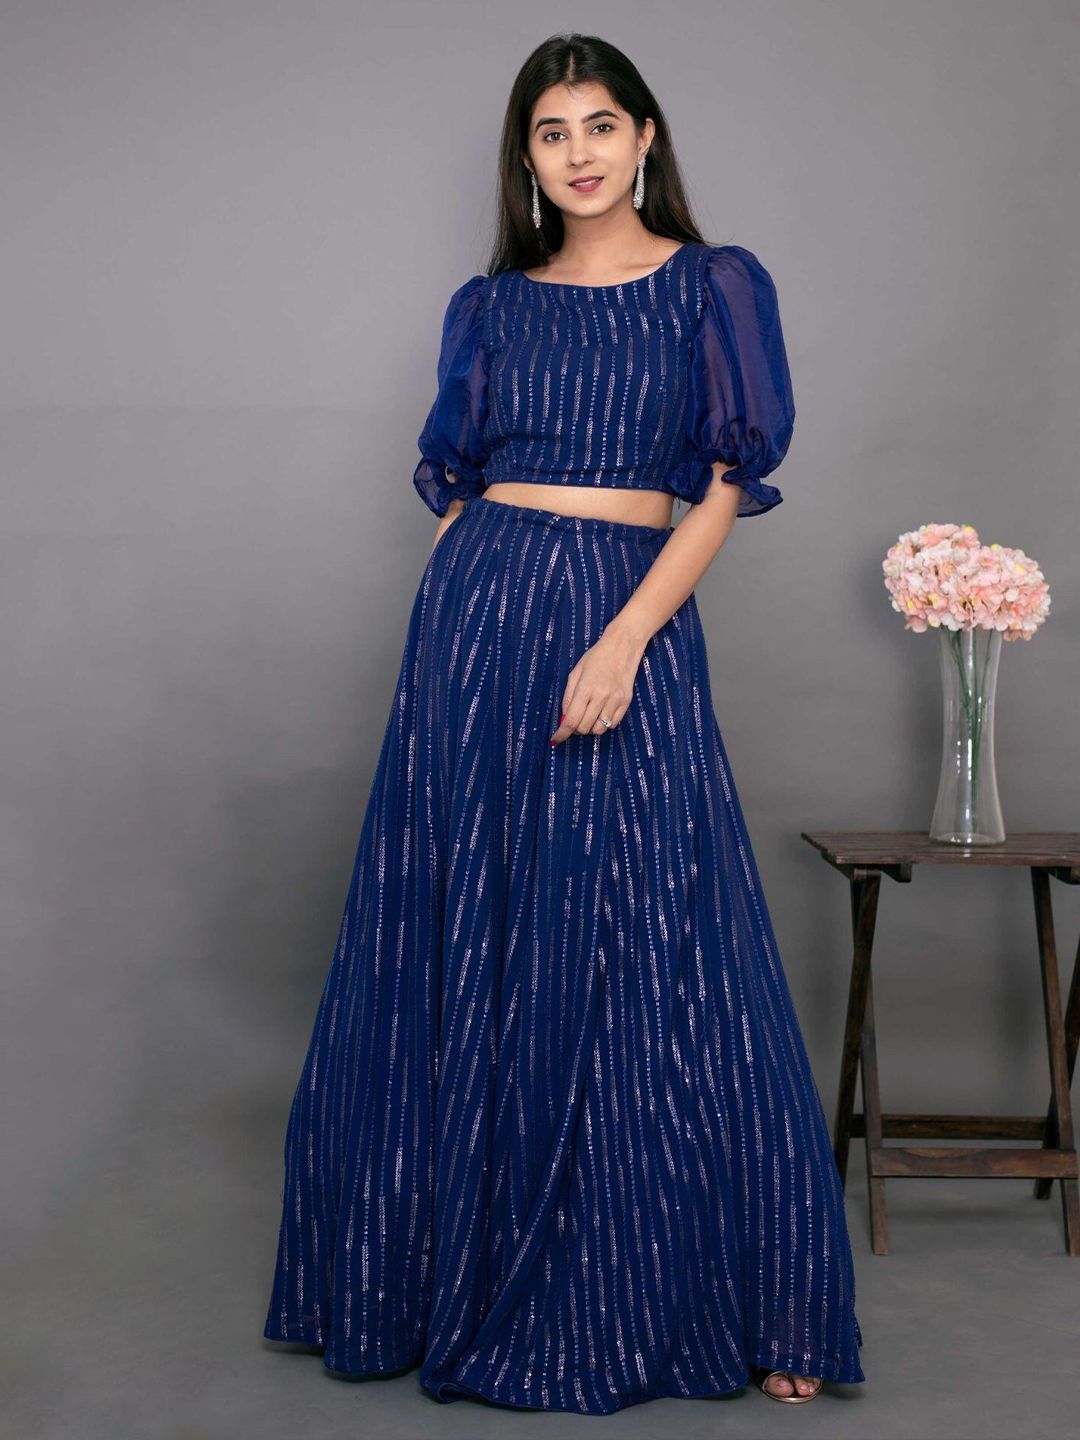 Fashionuma Blue Embroidered Semi-Stitched Lehenga & Price in India